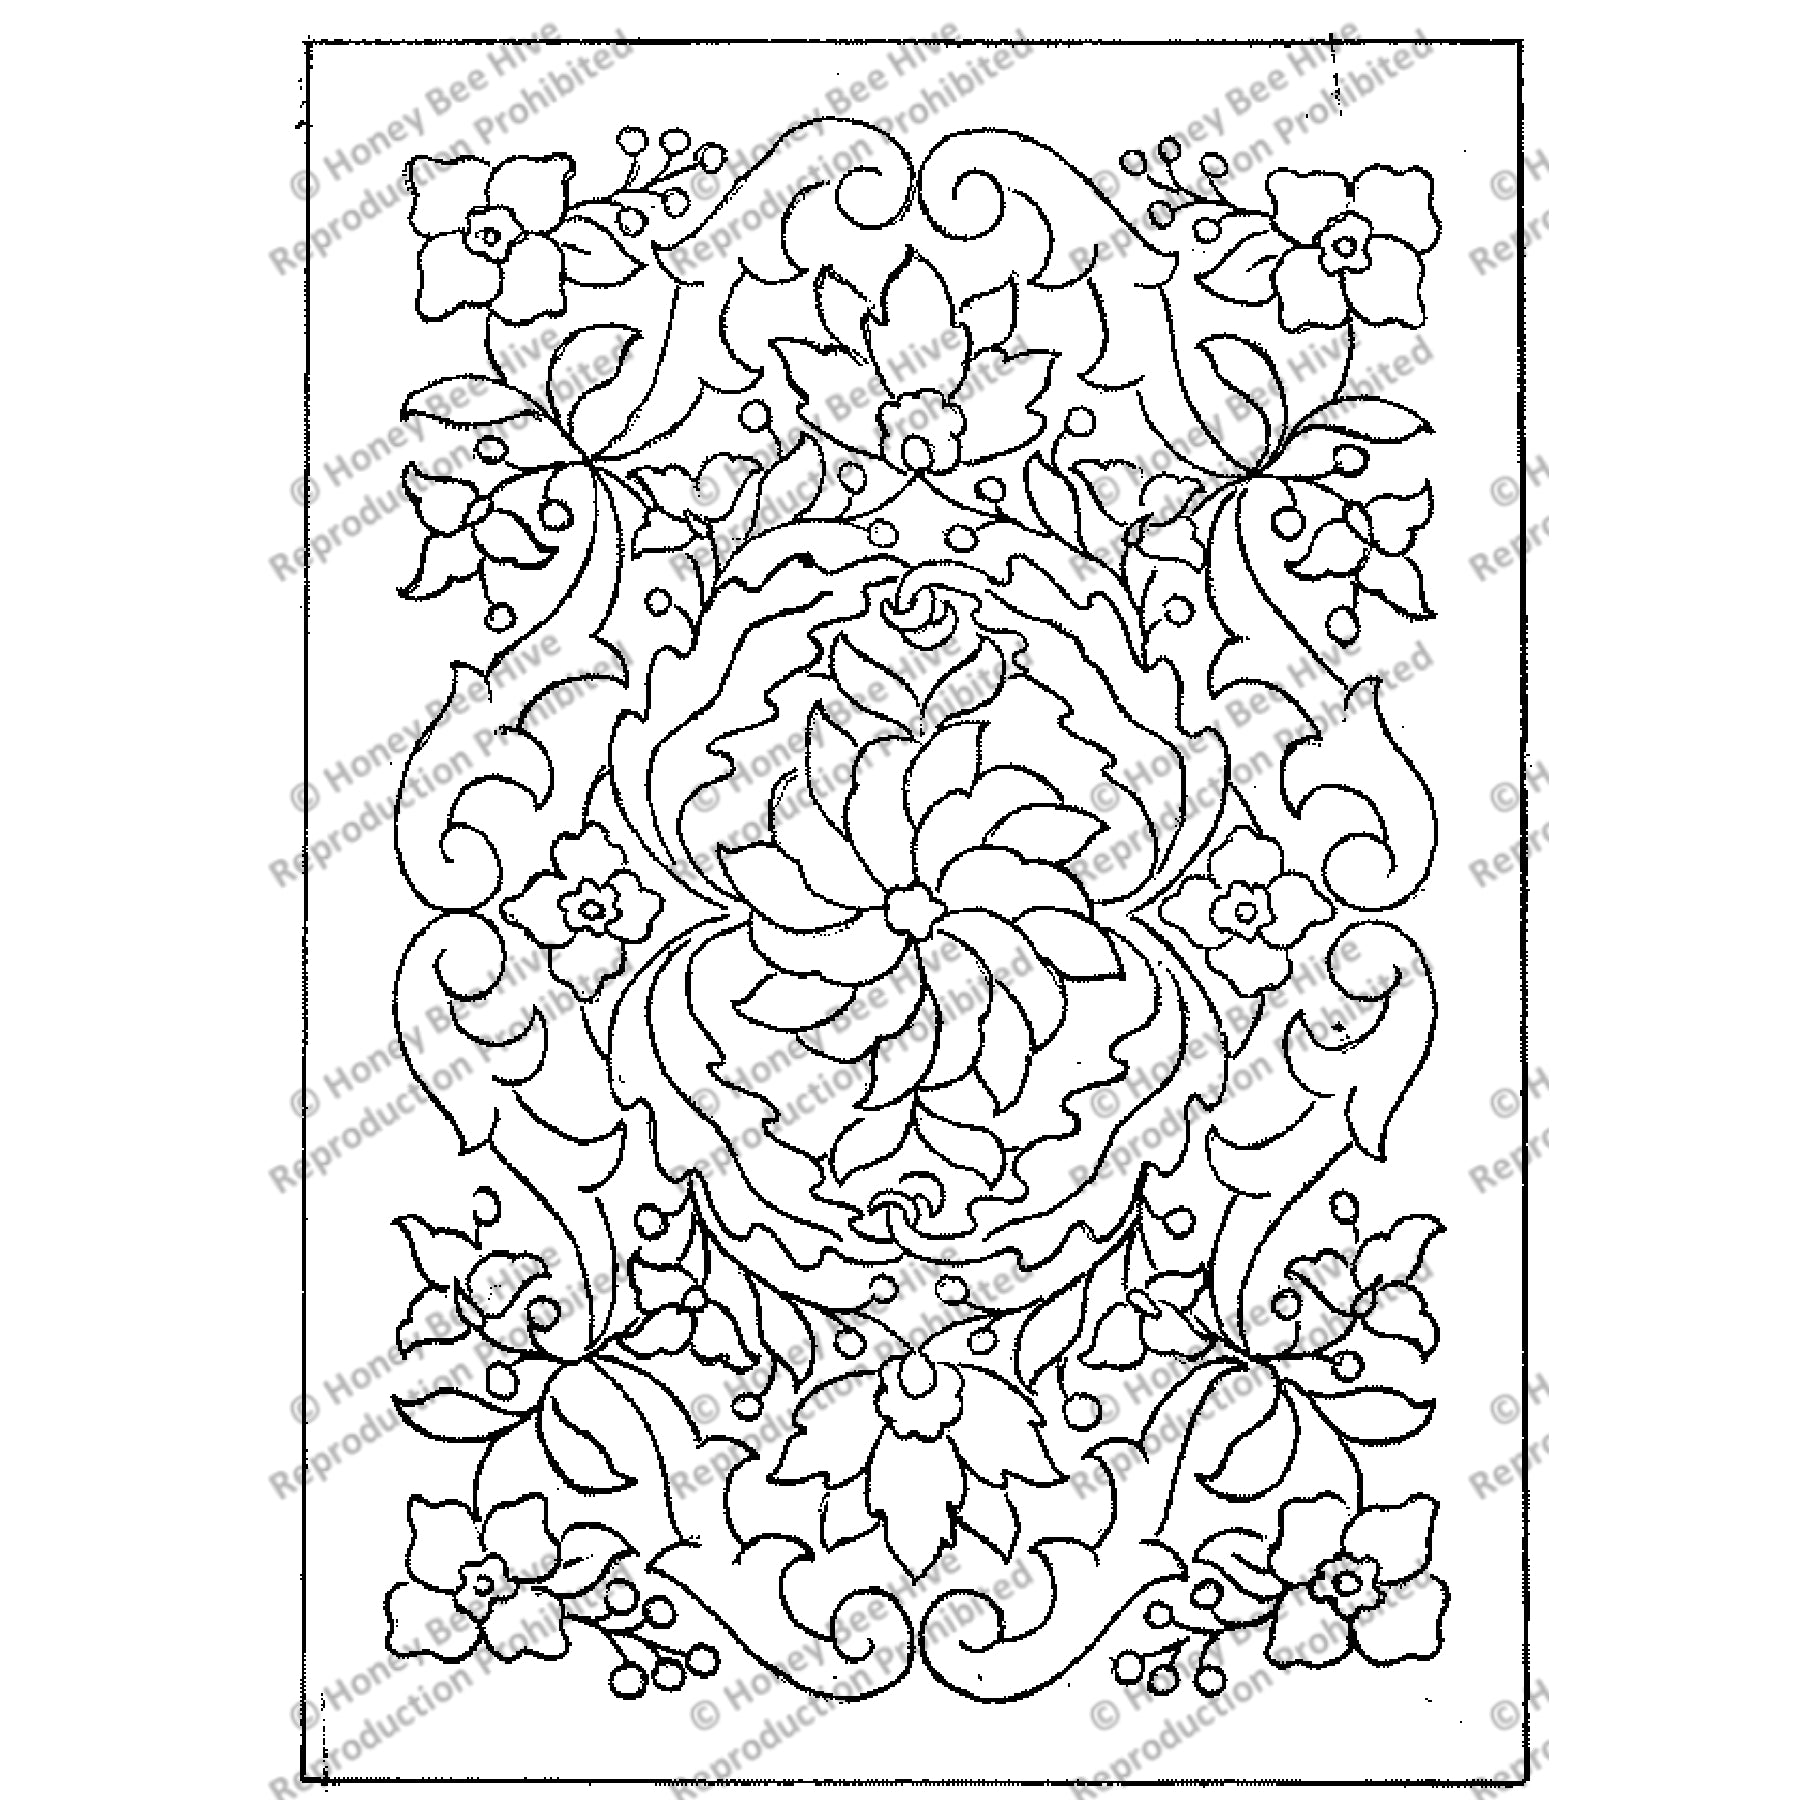 Gem Of Persia, rug hooking pattern